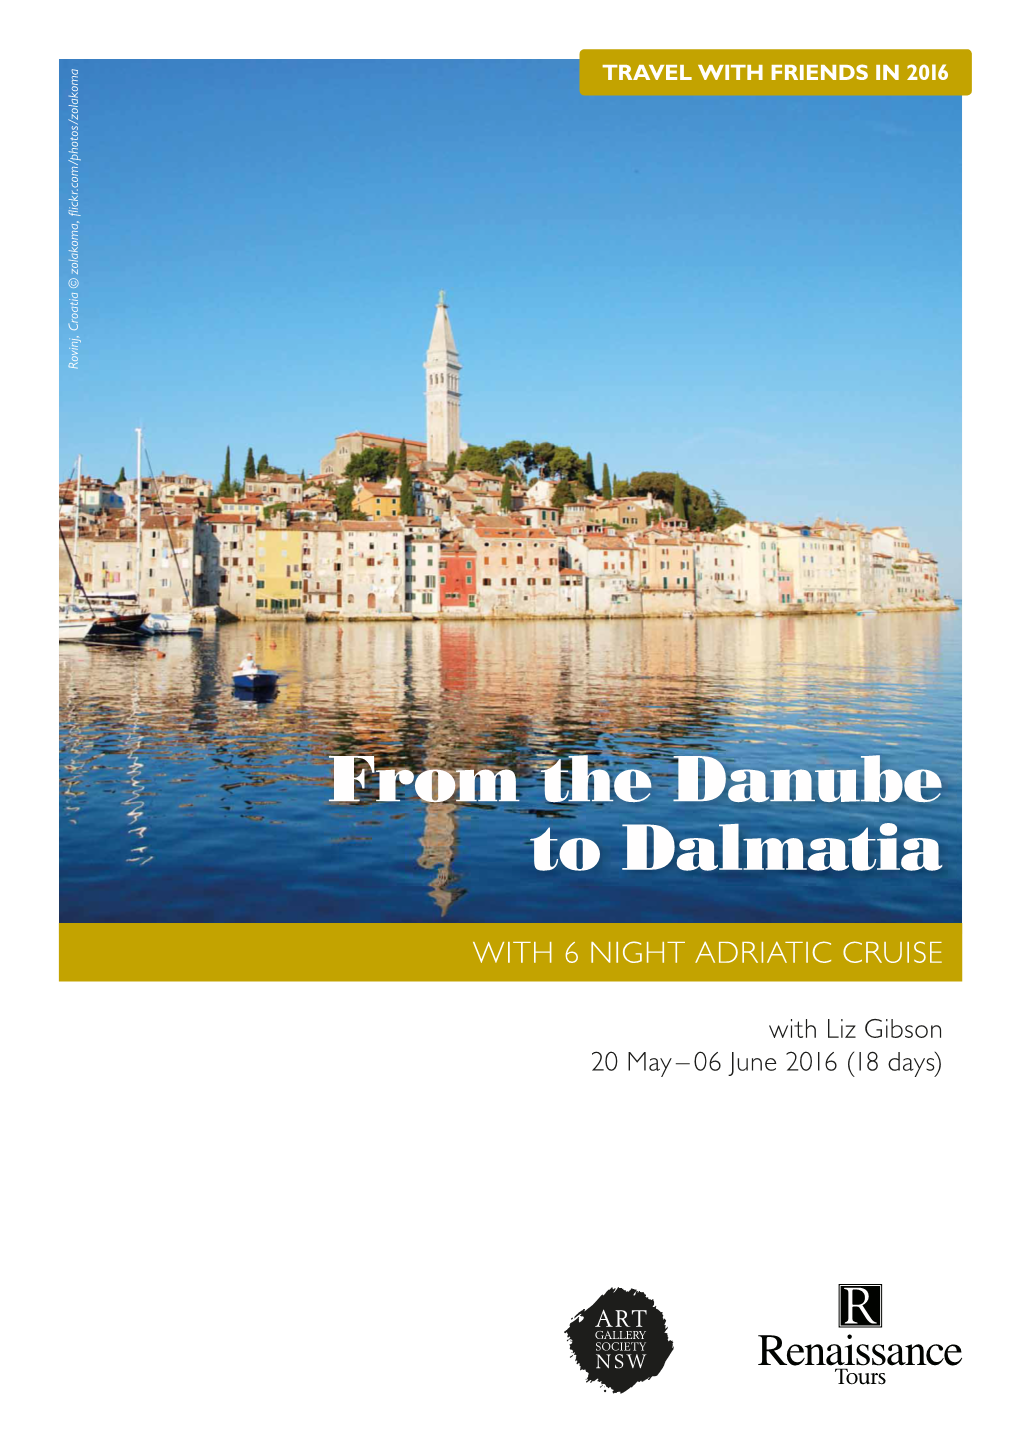 From the Danube to Dalmatia